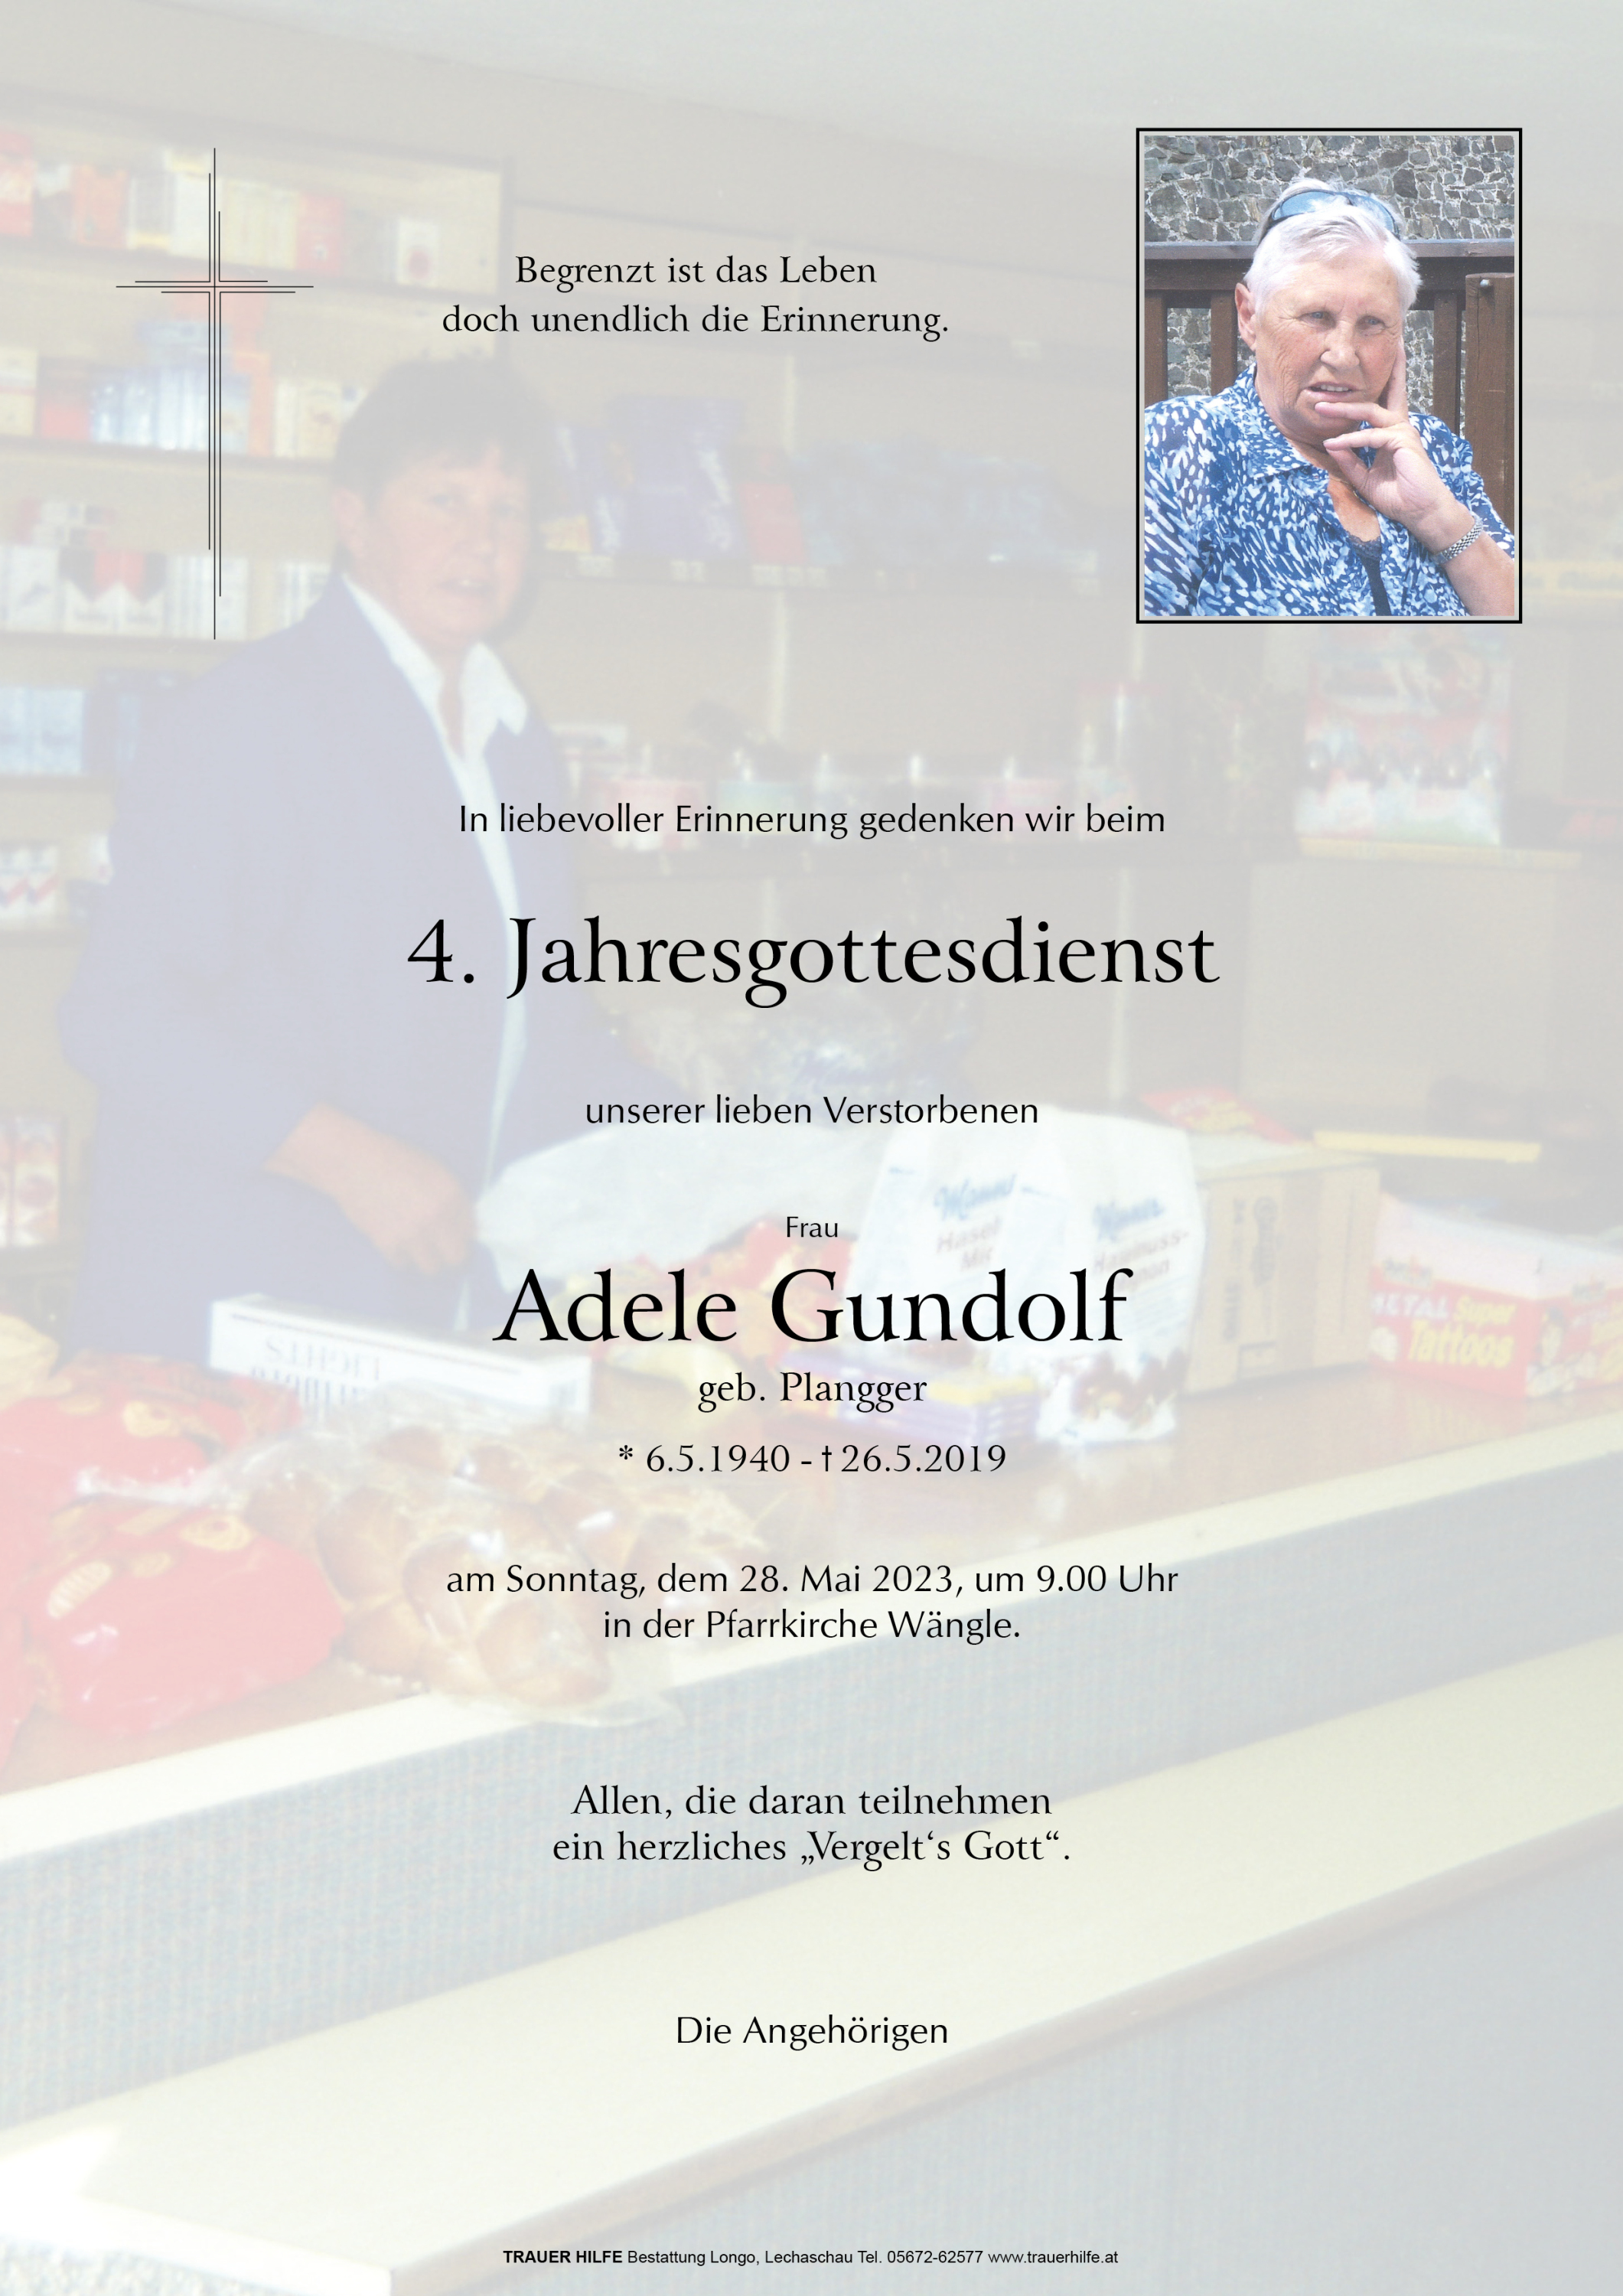 Adele Gundolf